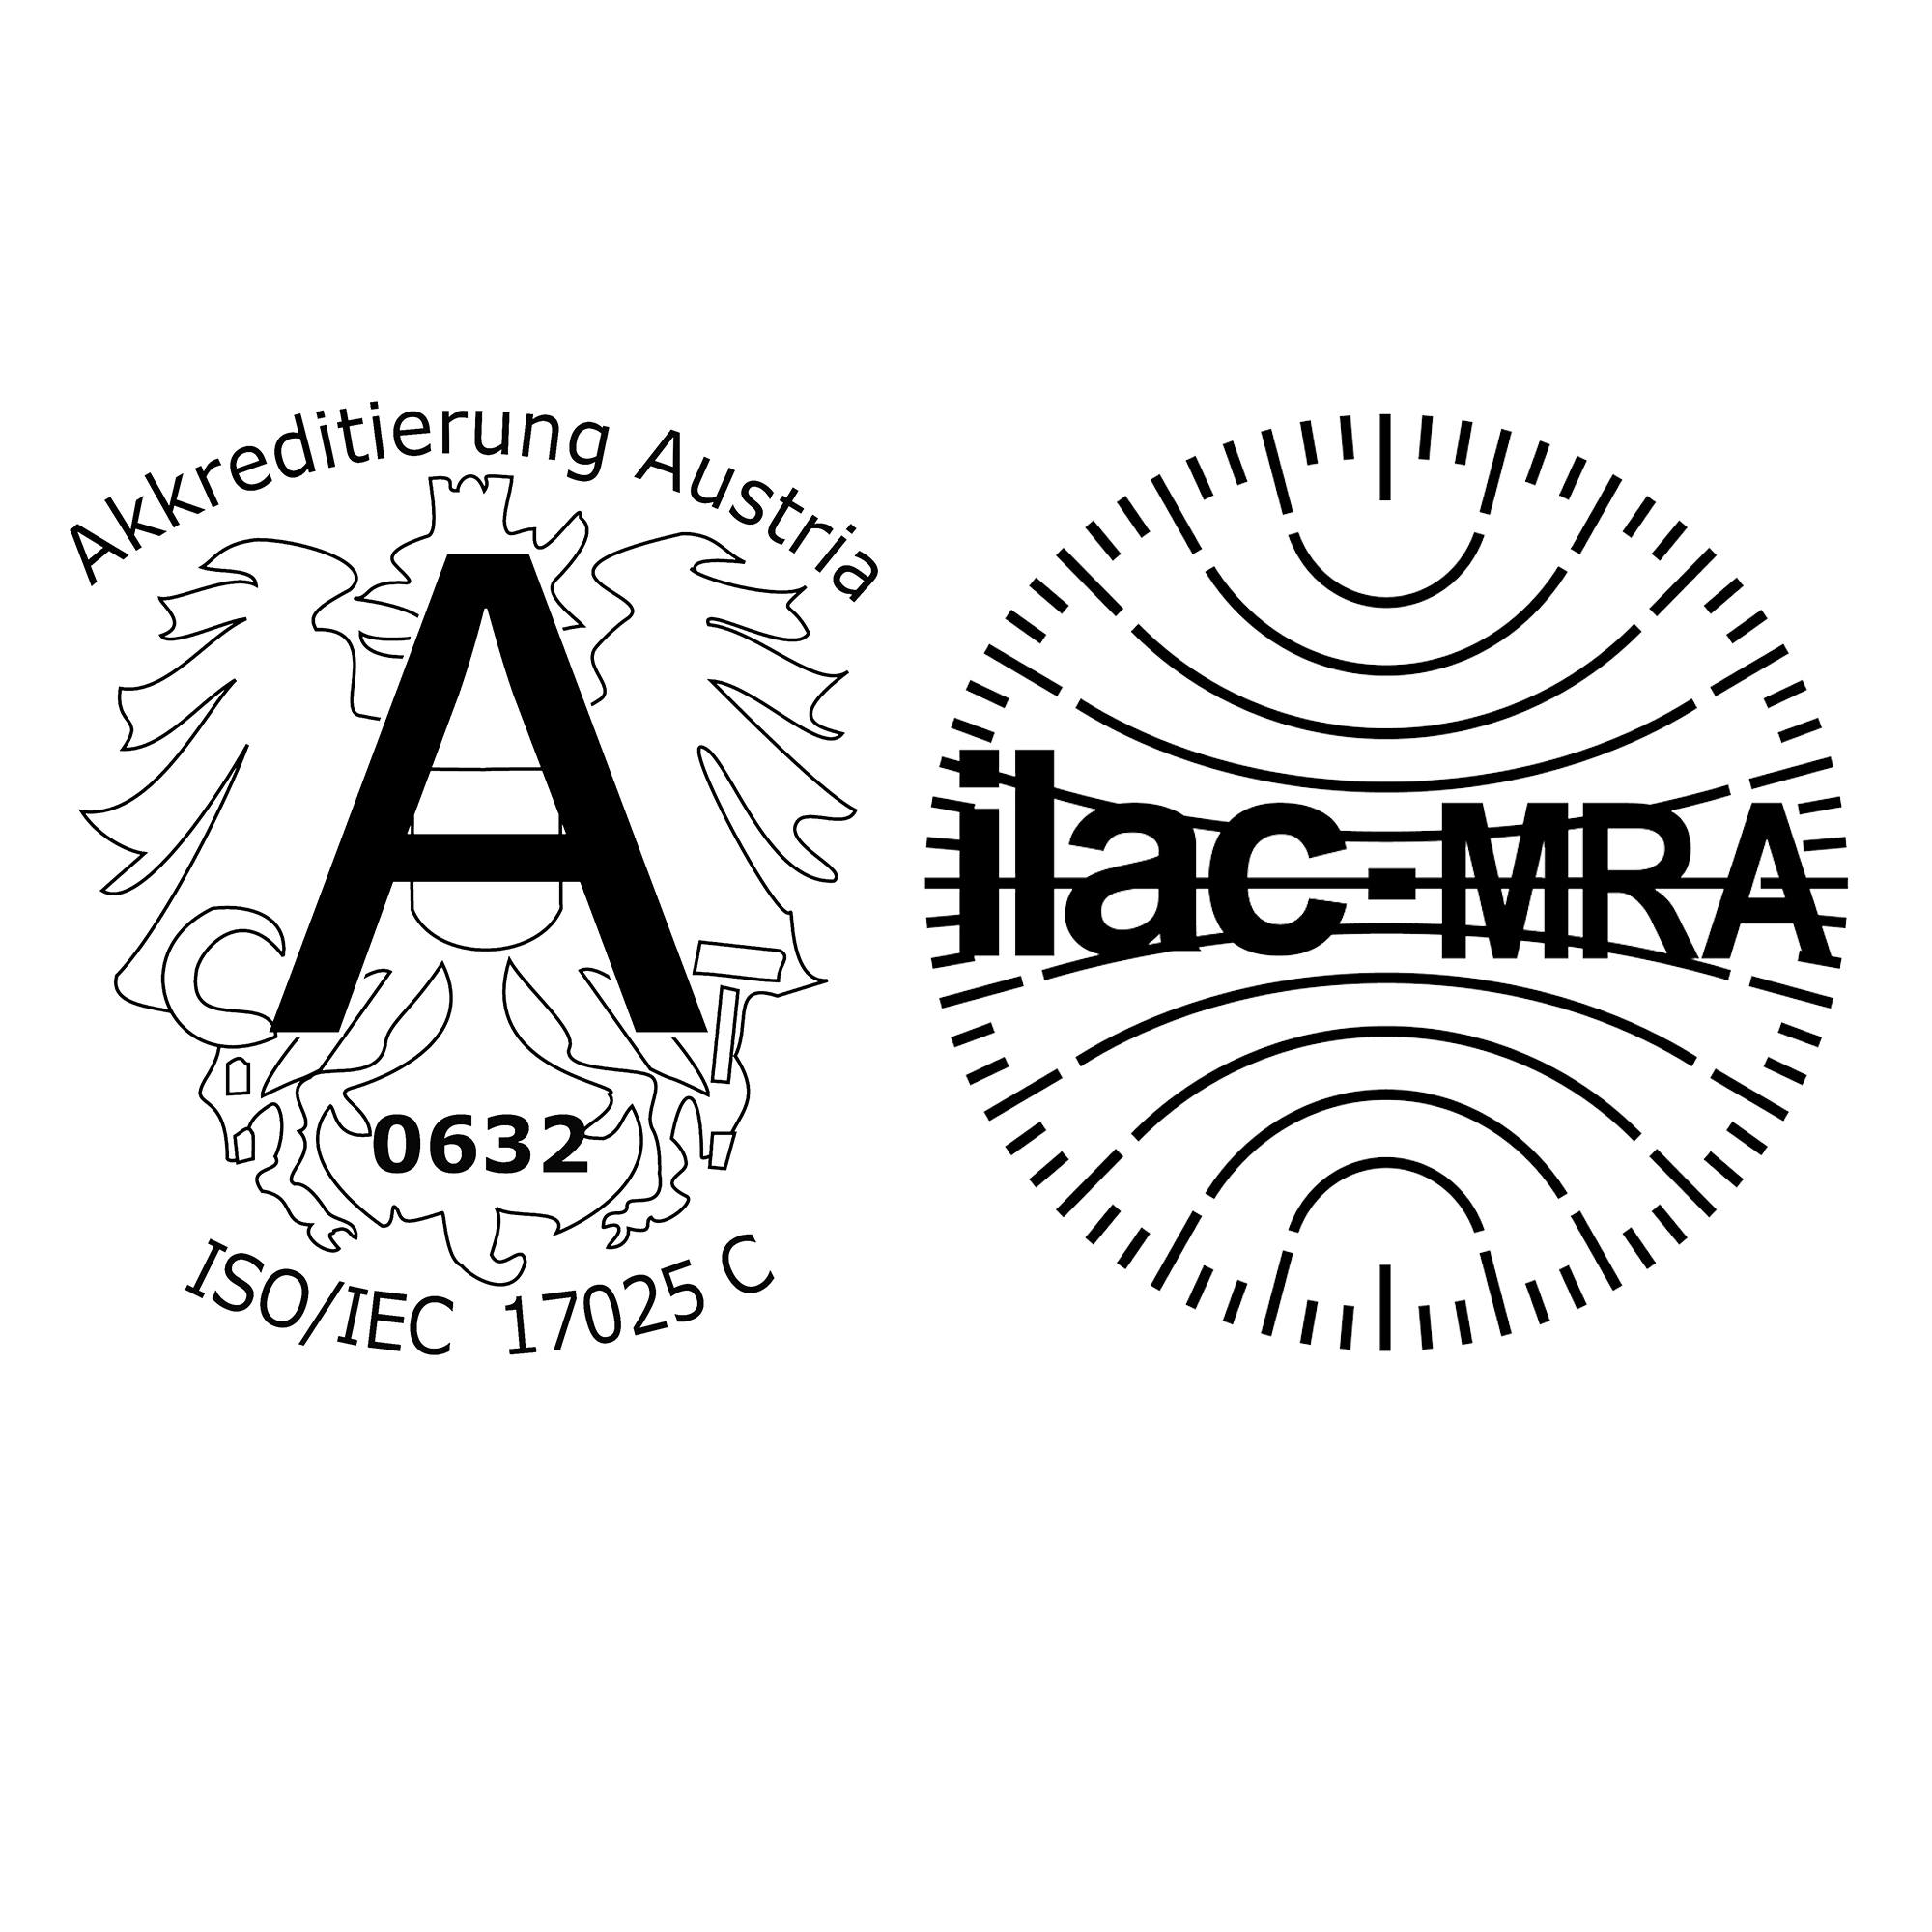 ILAC und Akkreditierung Austria